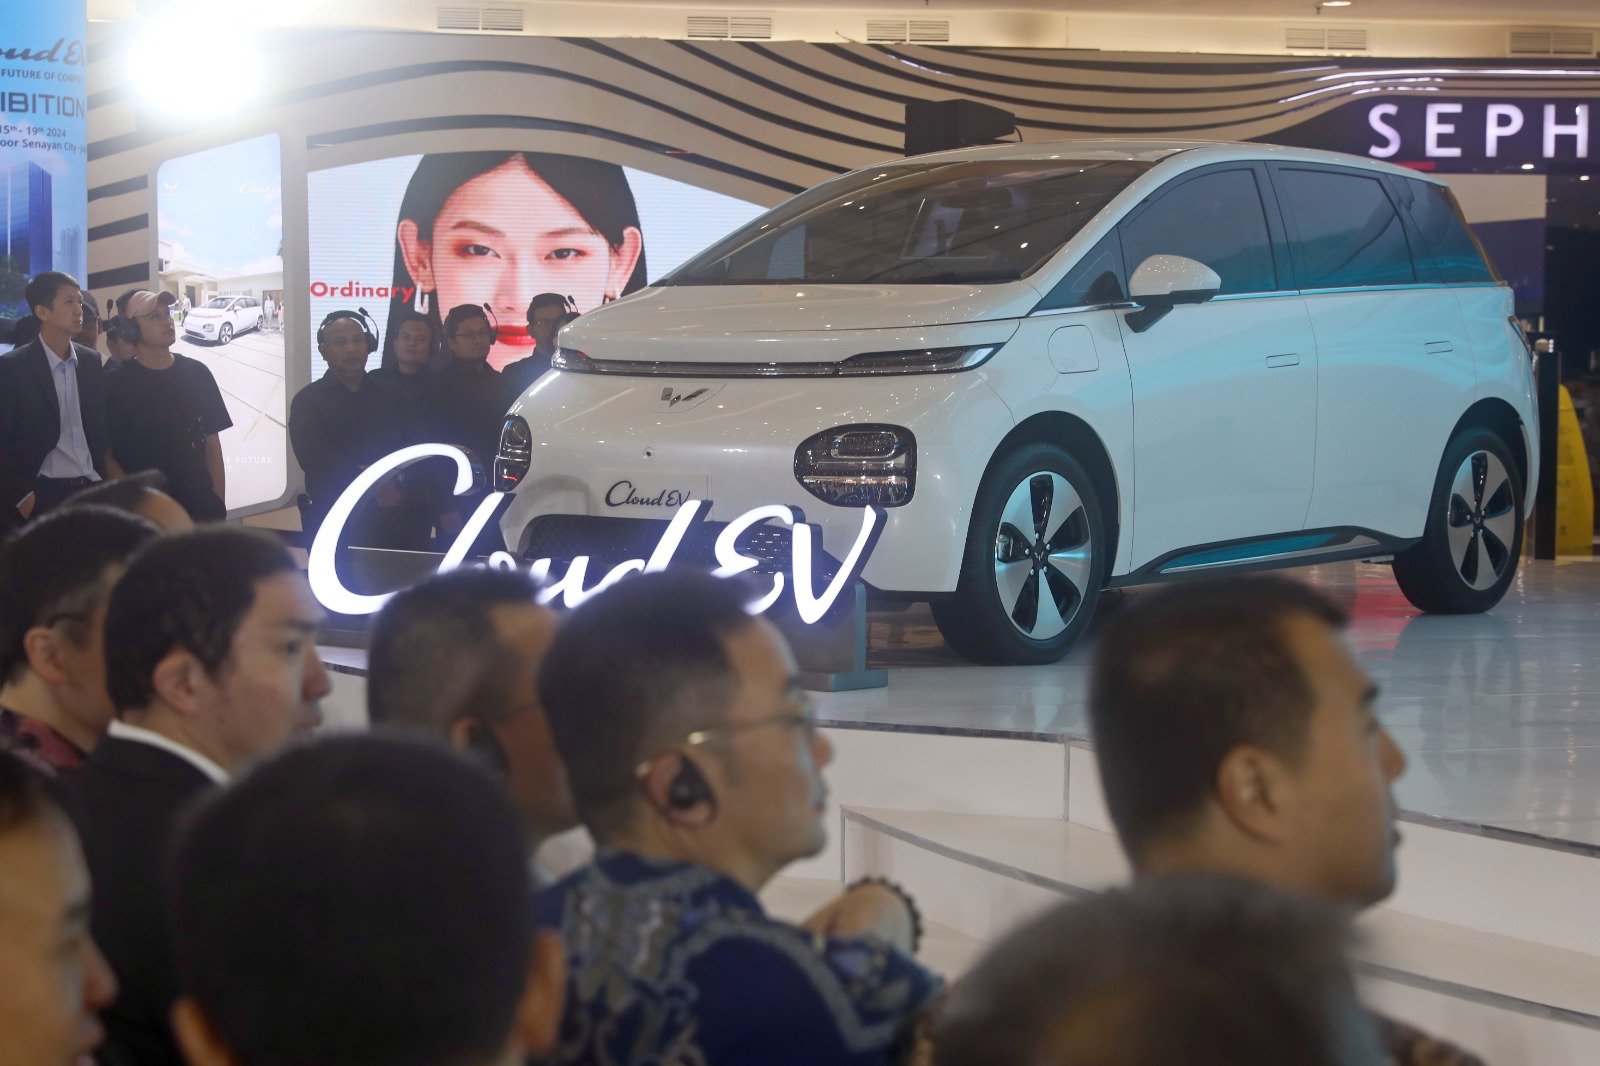 中国车企五菱本月15日在印尼雅加达发布新款电动车——CloudEV（宝骏云朵）。经过3年的布局，五菱印尼三款新能源产品（Air Ev，BinguoEV，CloudEV）已进入印尼乘用车市场。图为发布会现场。（图取自中新社）